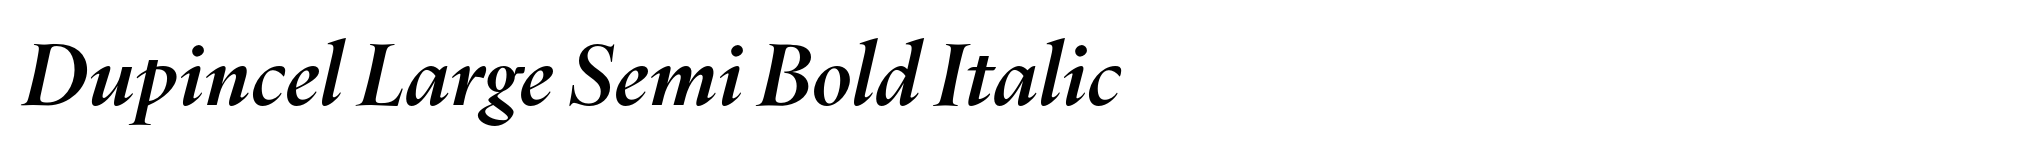 Dupincel Large Semi Bold Italic image